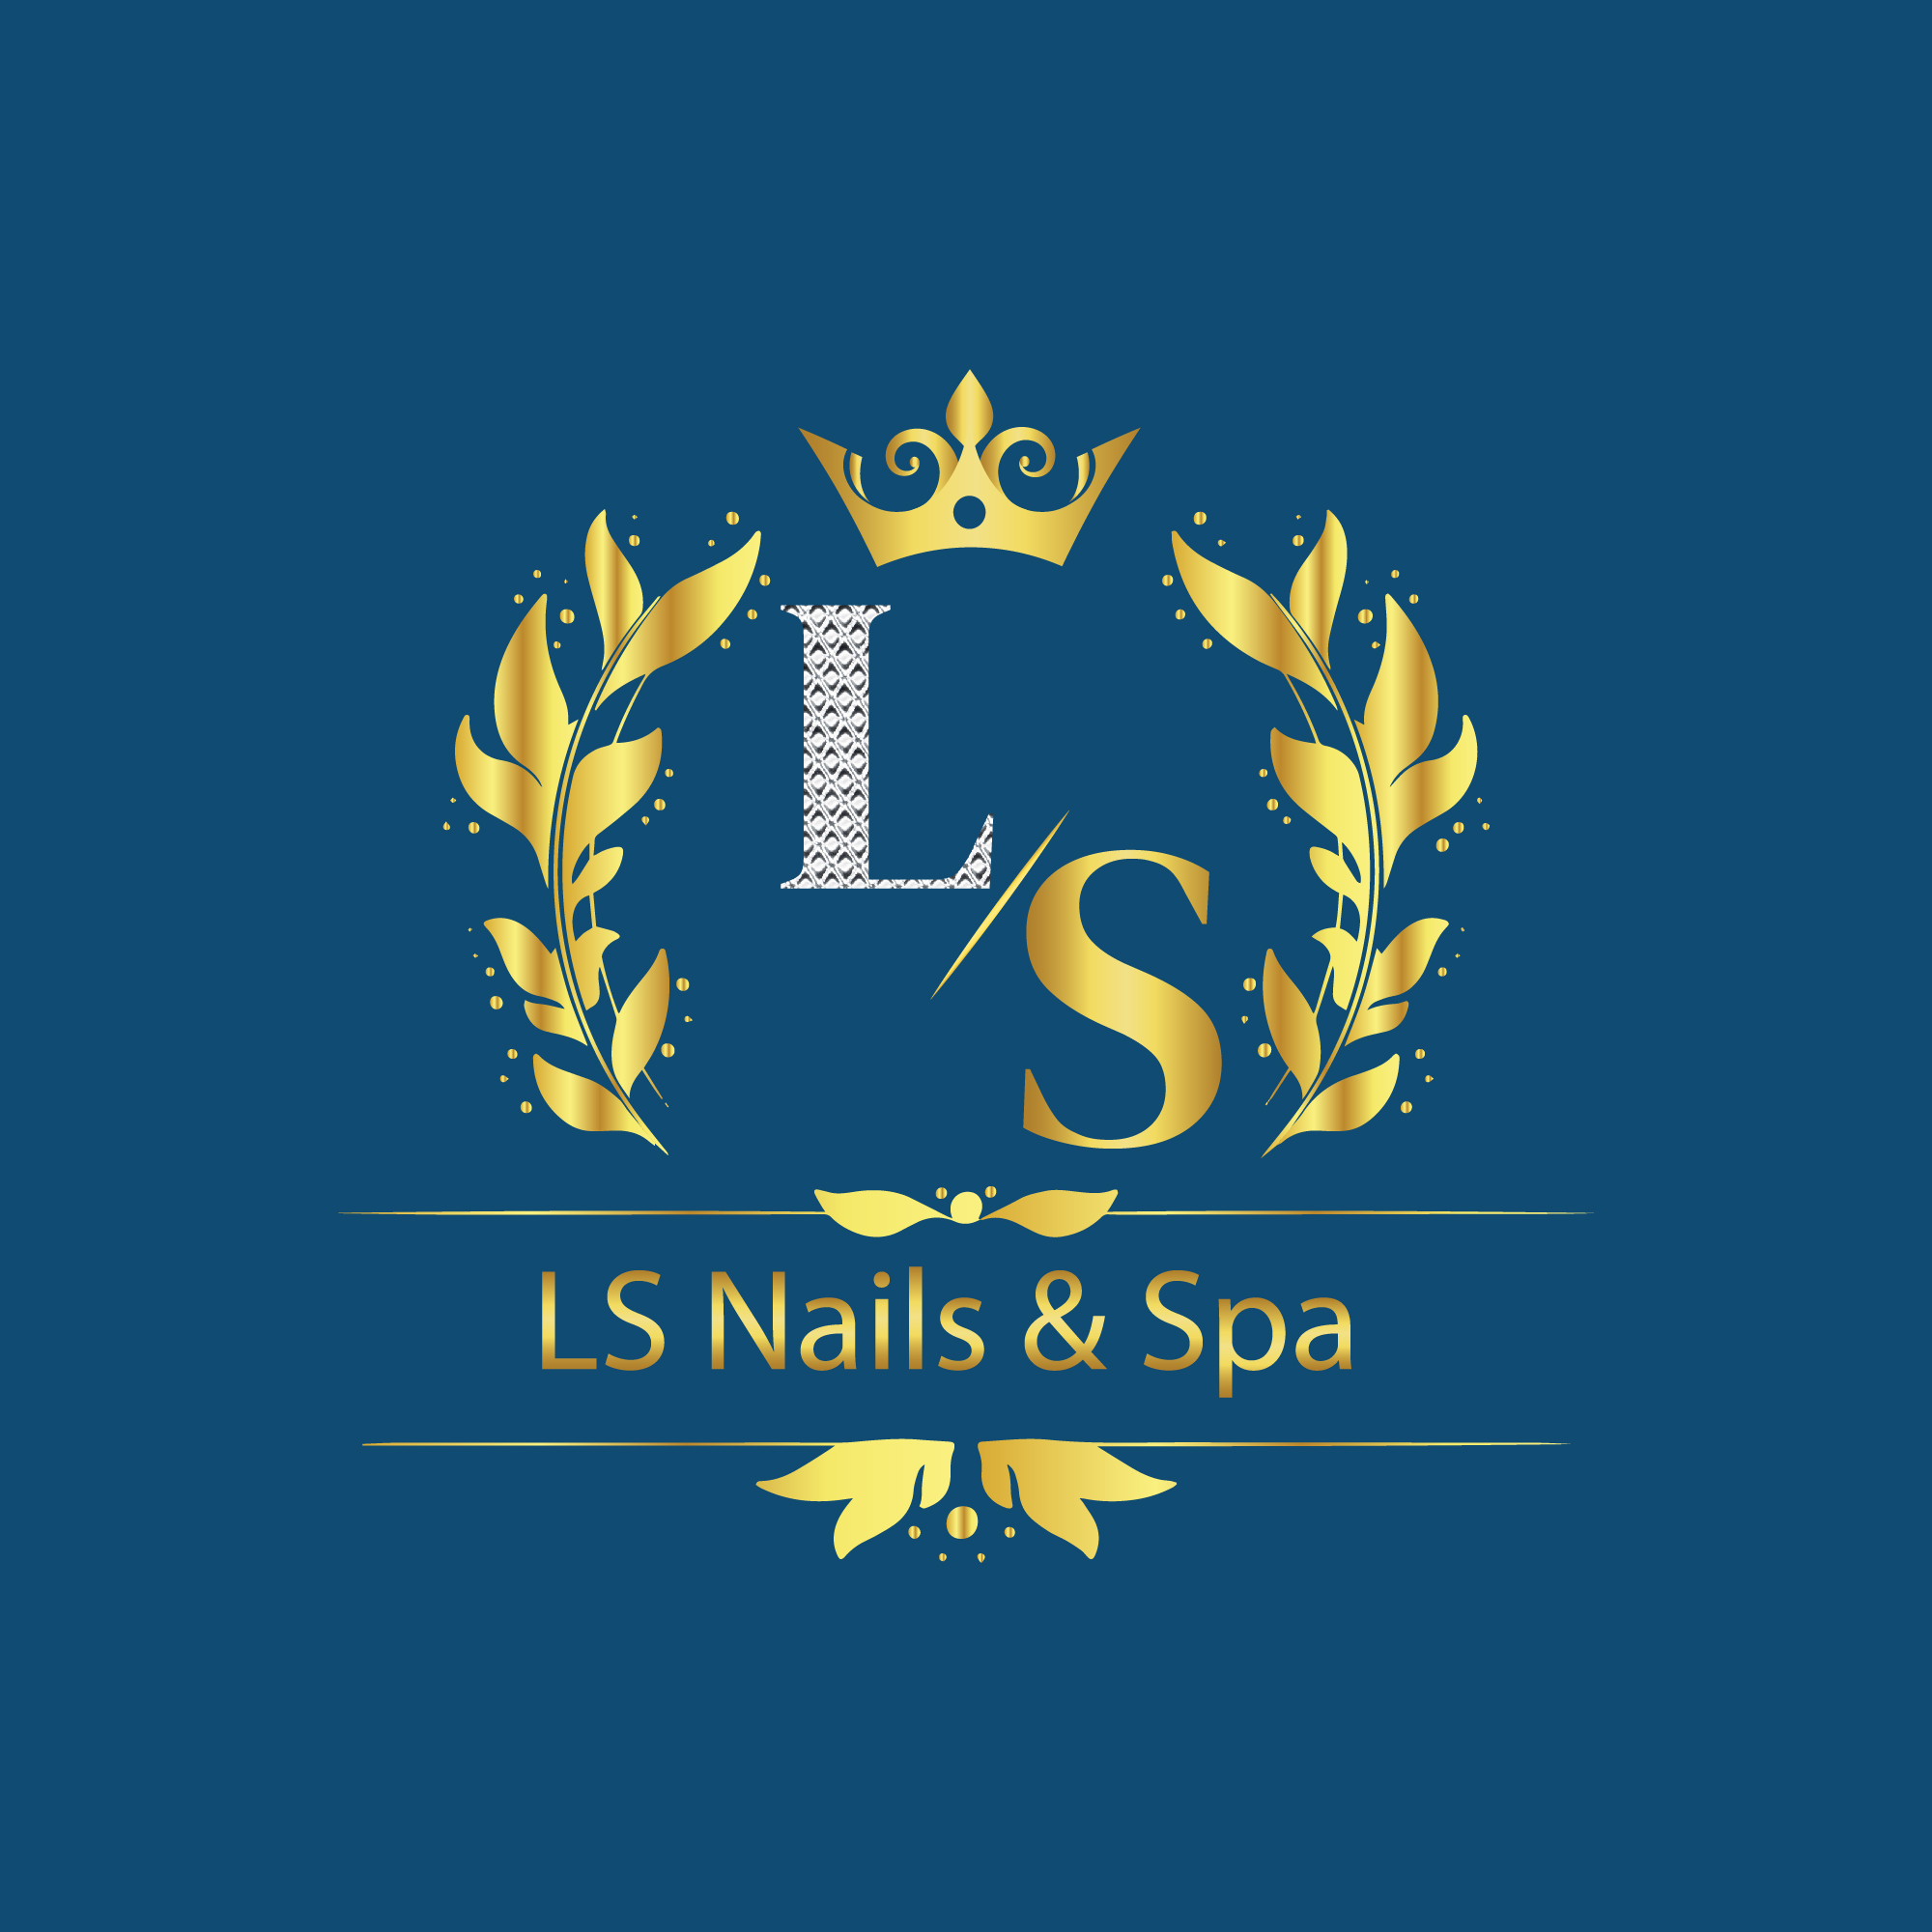 LS Nail & Spa